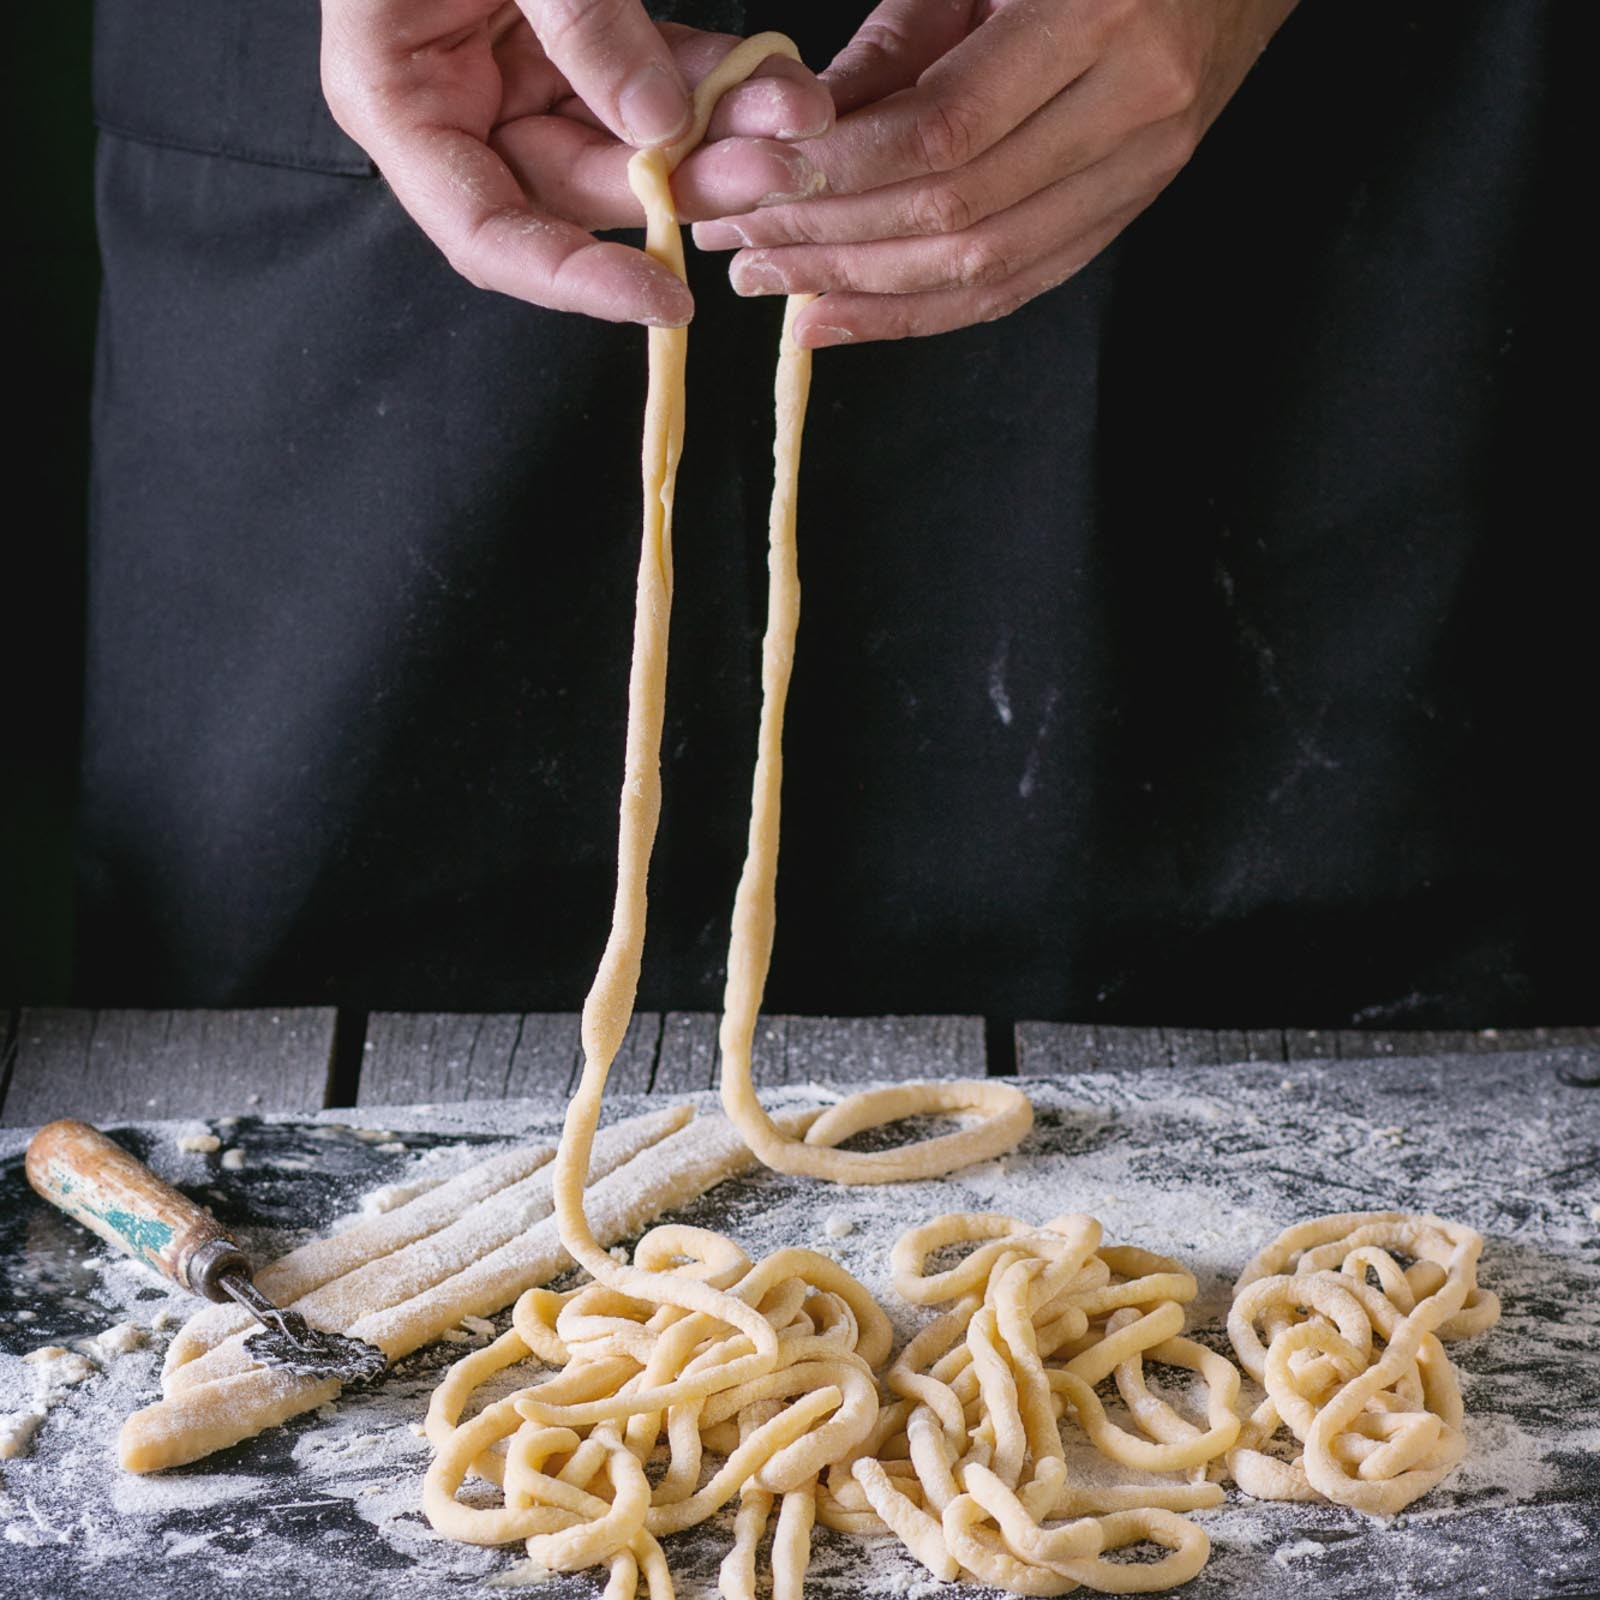 I pici sono una pasta simile agli spaghetti  della cucina tradizionale contadina  Toscana .Realizzati solo con farina di grano tenero , acqua, sale. Con il sugo all' aglione della chiana sono un piatto tipico aretino. Questi sono realizzati a mano come li facevano i nostri nonni